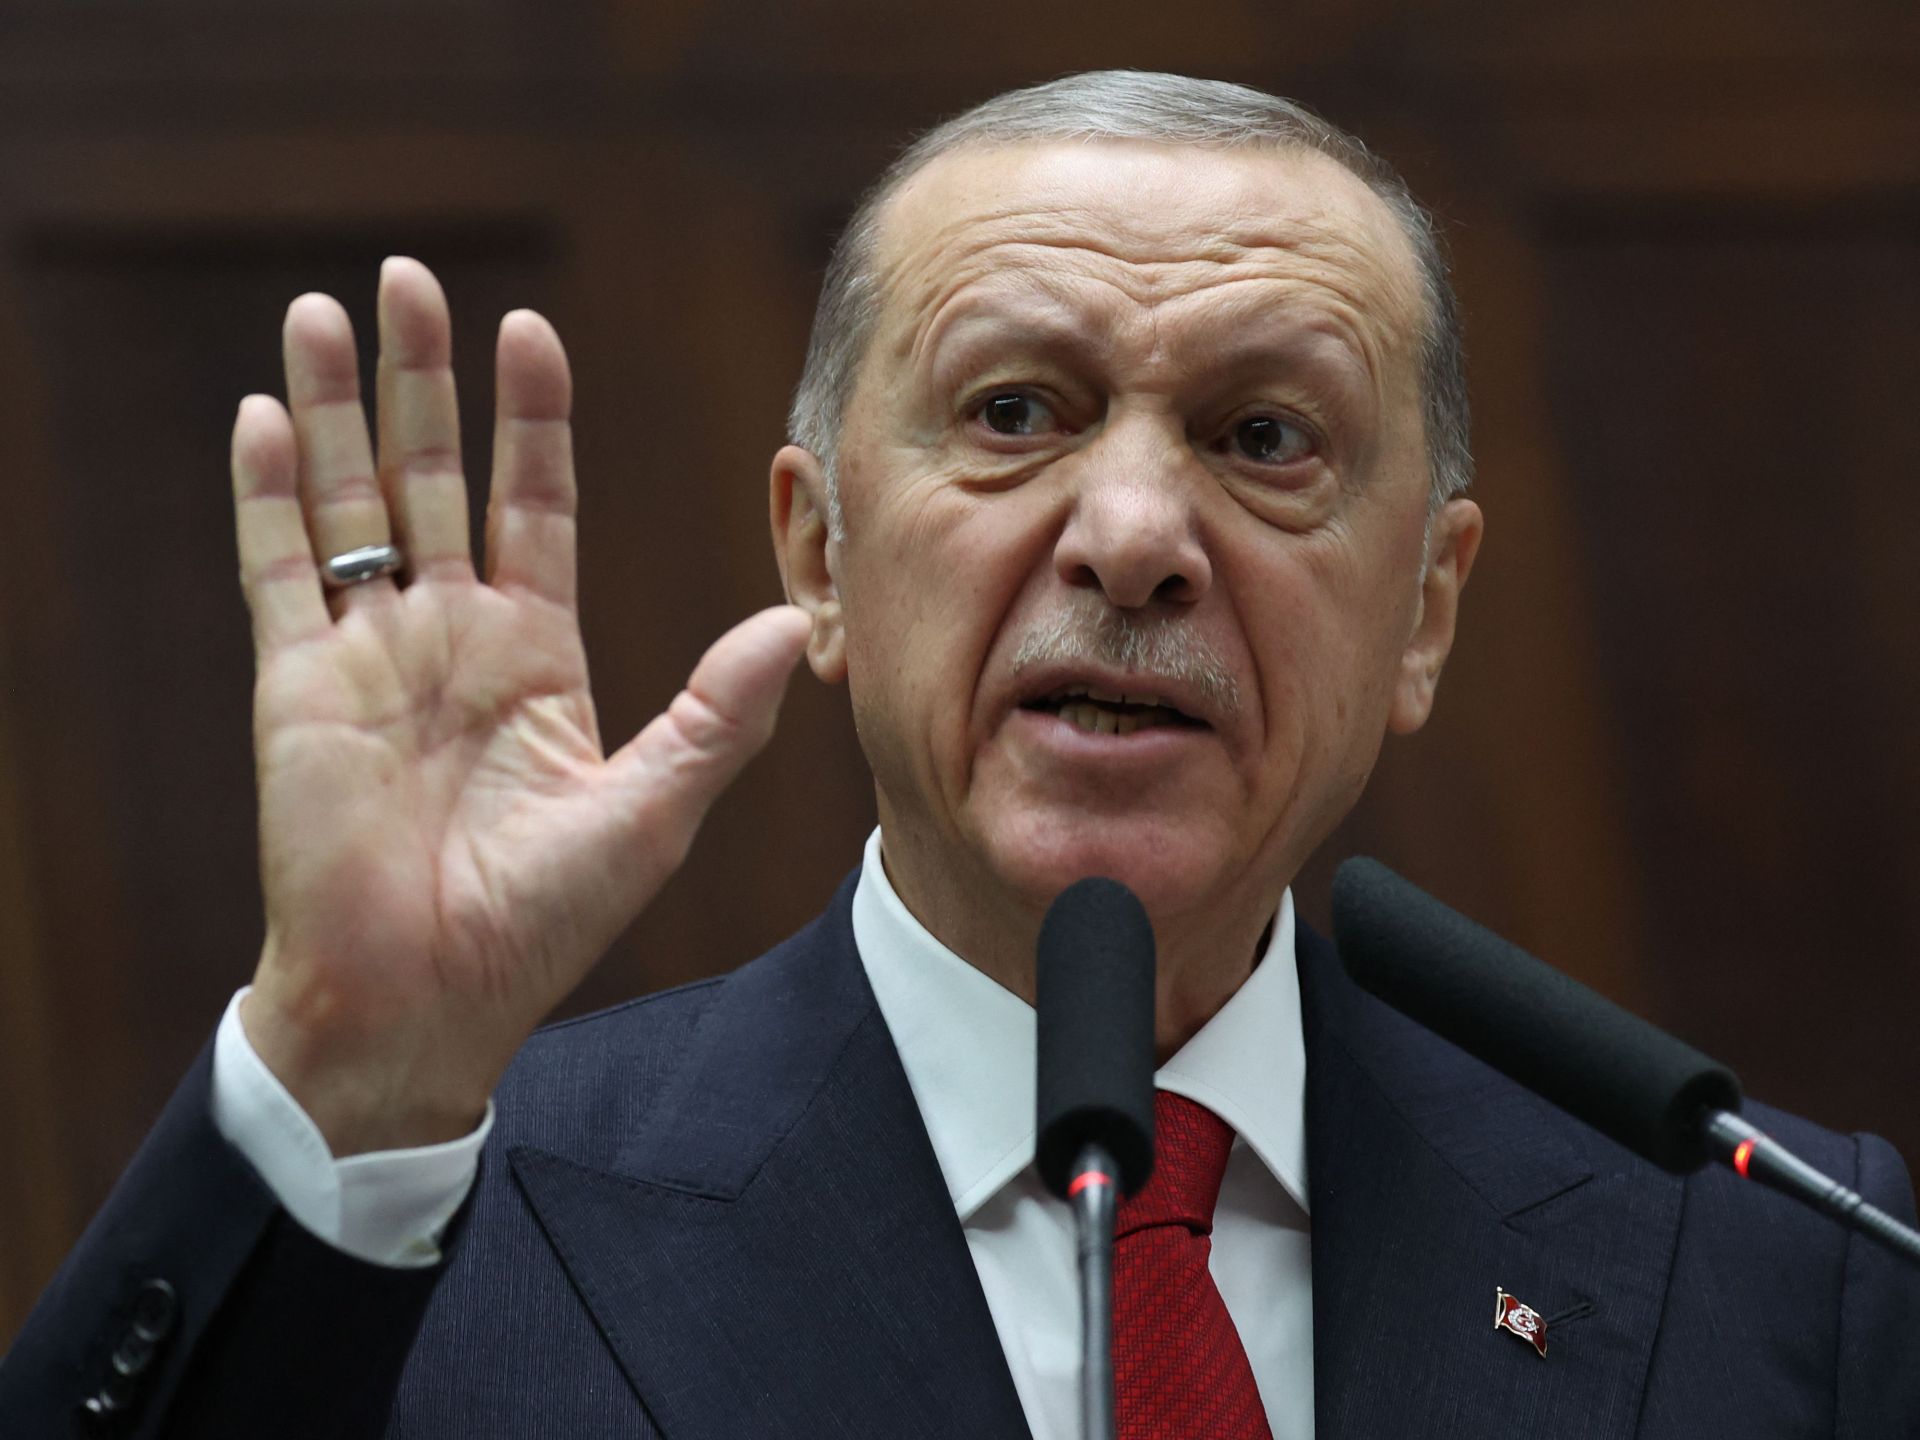 تركيا ترفض تصريحات لنتنياهو بحق أردوغان وتصفها بالافتراءات | أخبار – البوكس نيوز